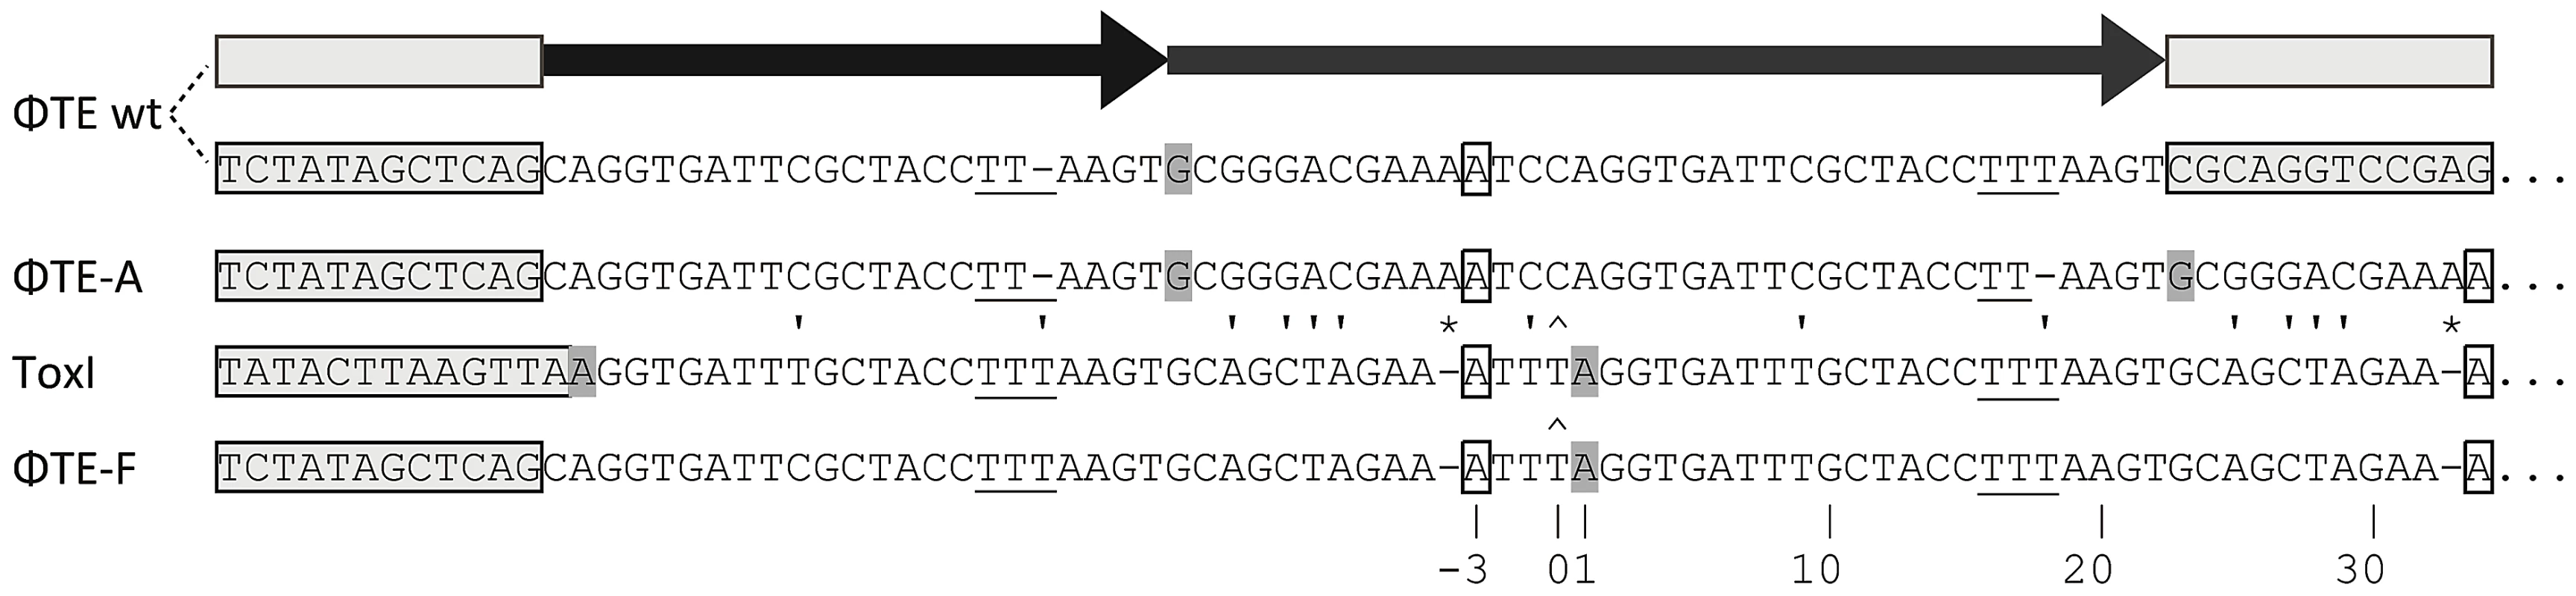 DNA alignment of ΦTE-phage escape loci and comparison with ToxI.